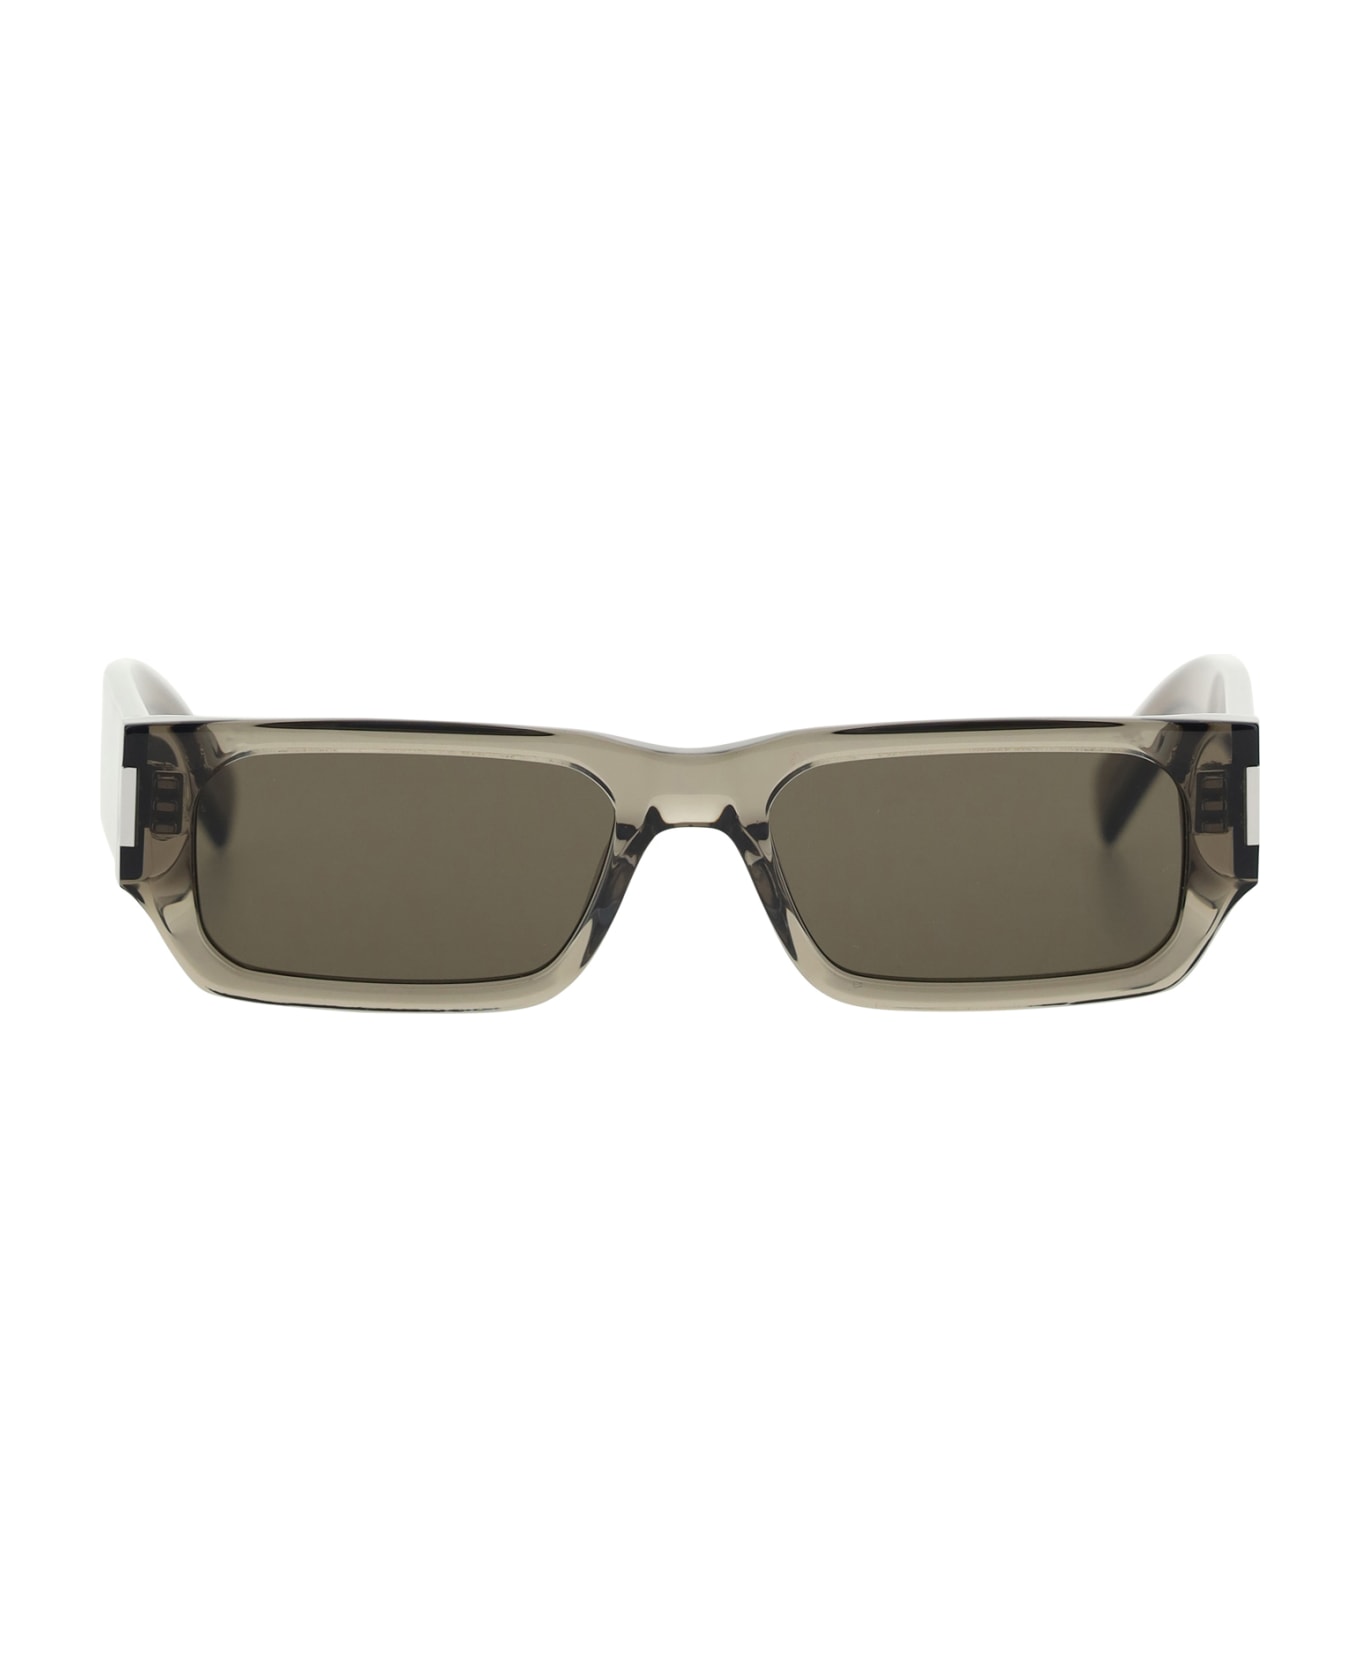 Saint Laurent Sunglasses - Brown Brown Grey